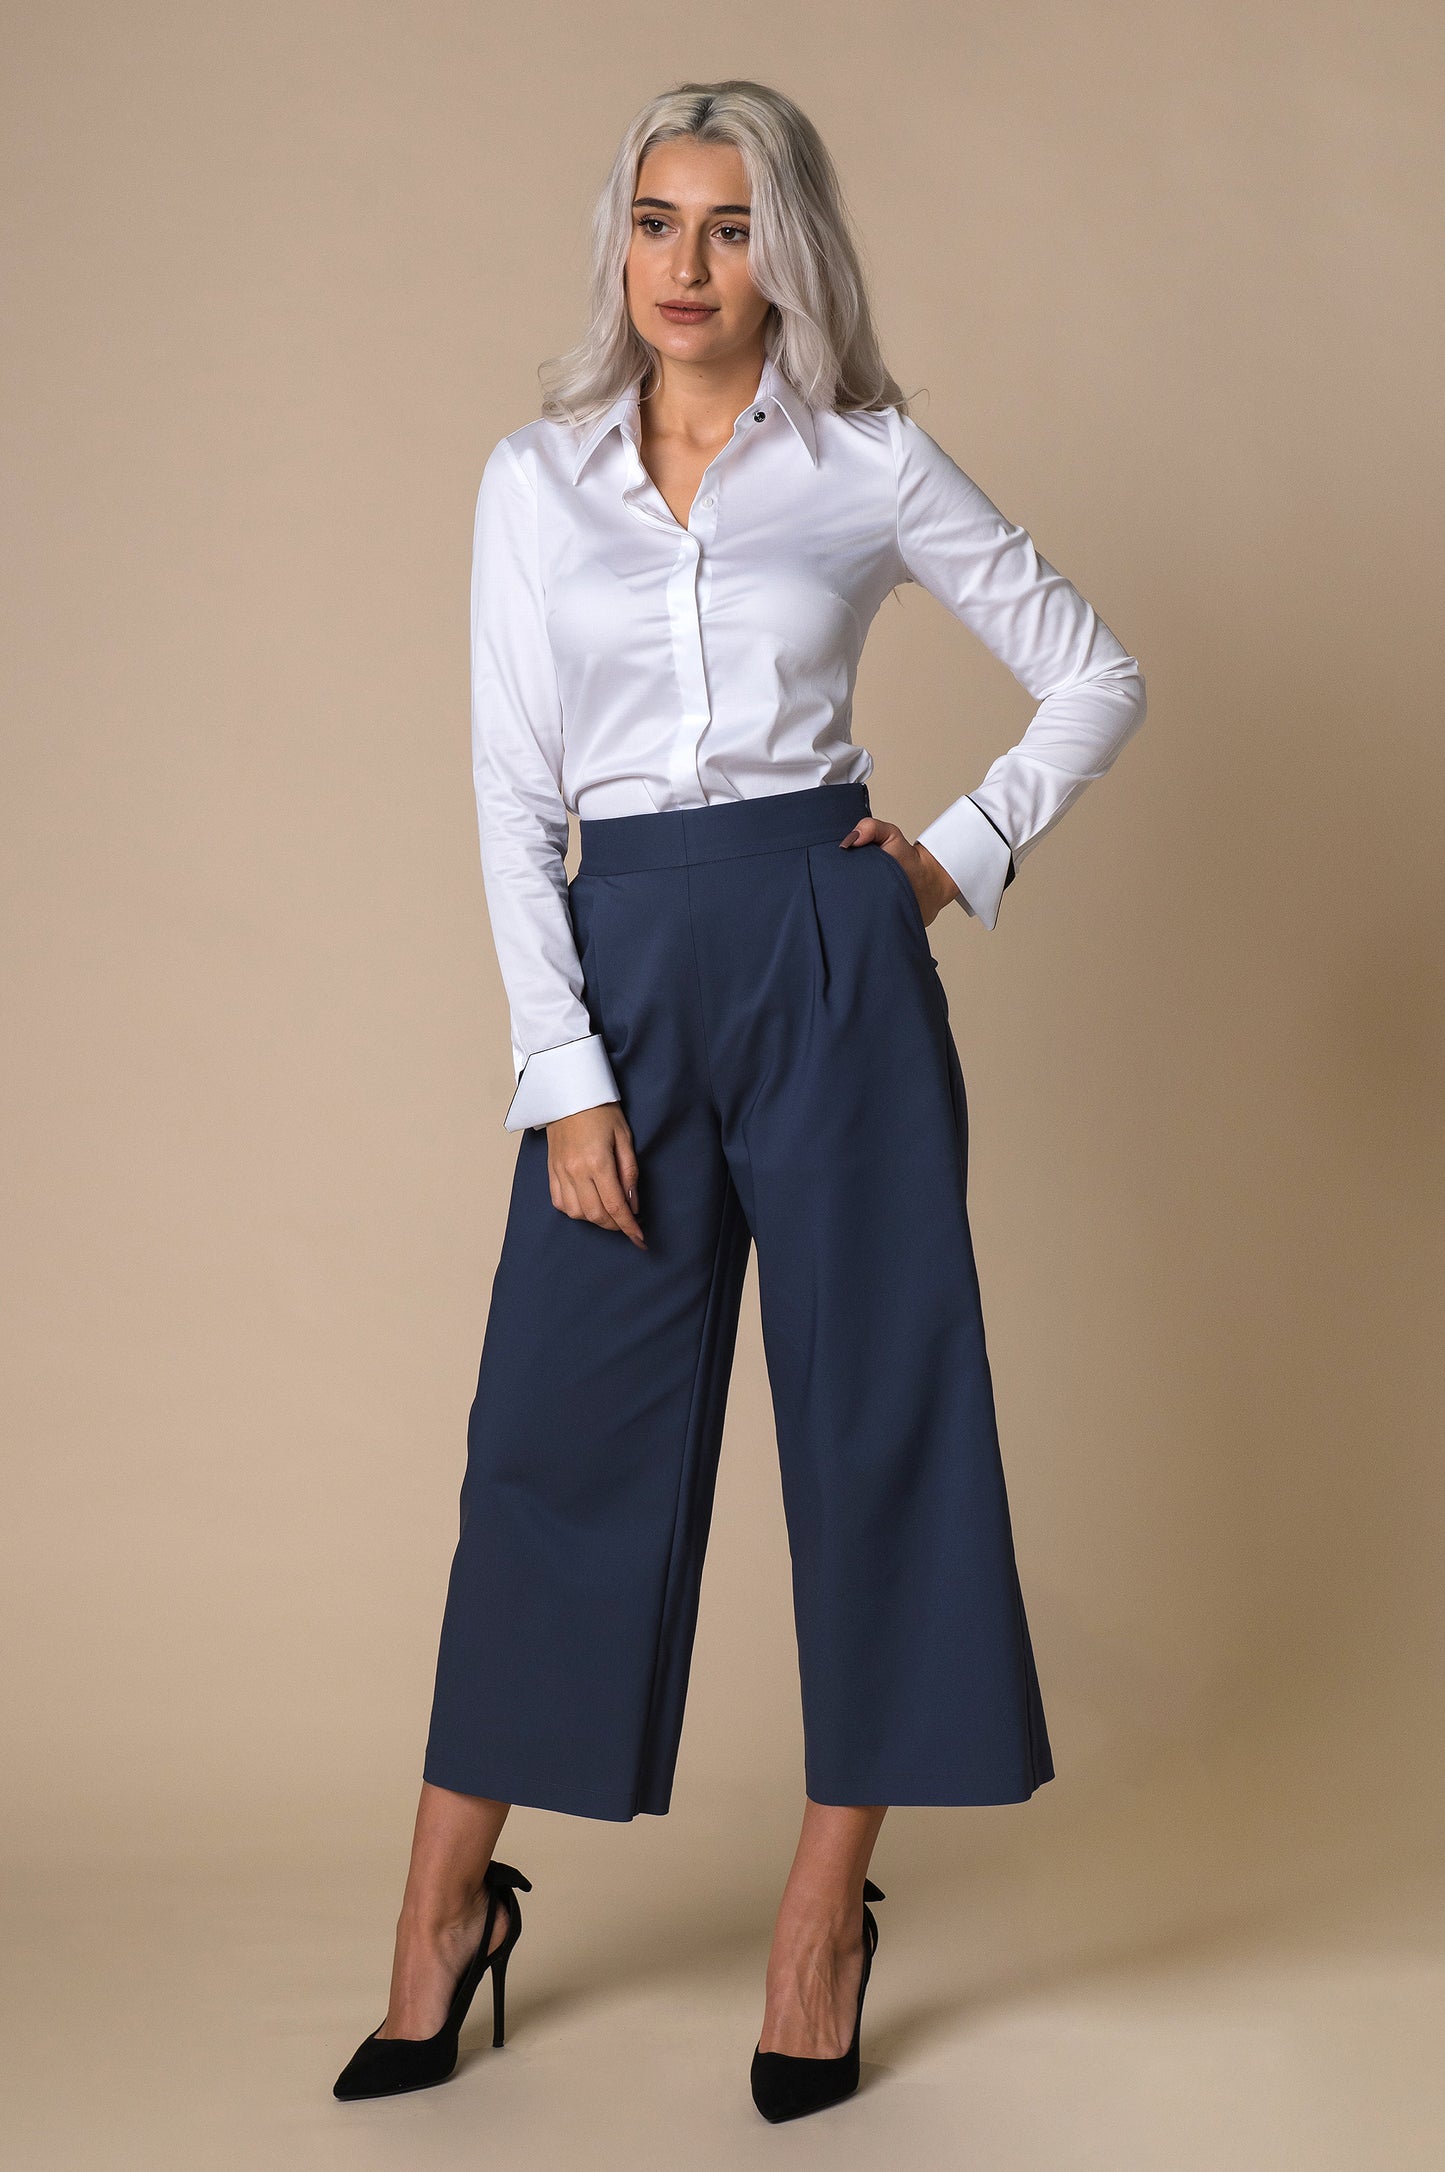 Pantaloni evazati 3/4 de culoare albastru inchis, model culotte